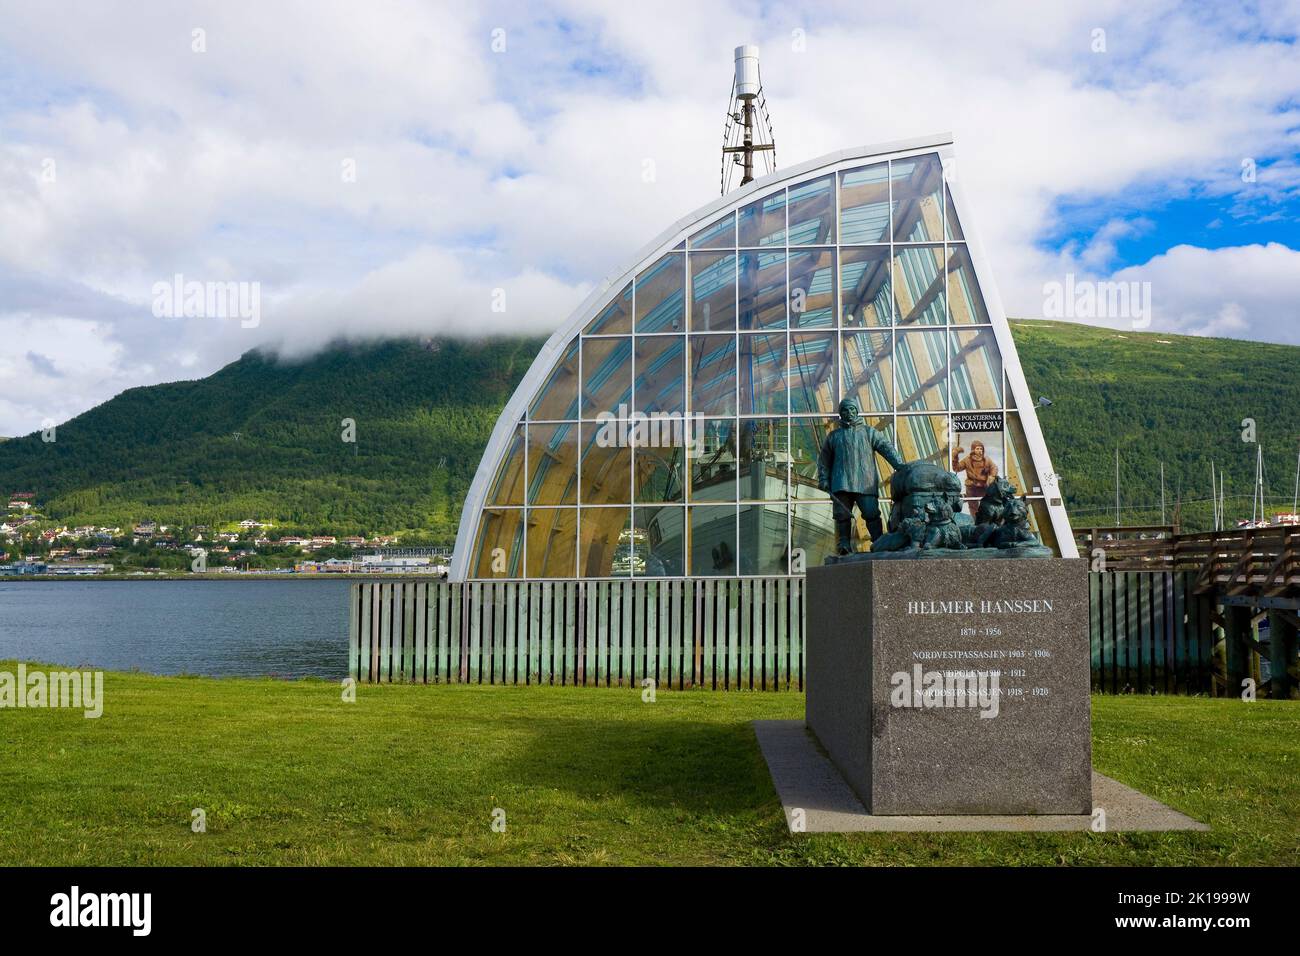 Denkmal von Helmer Hanssen und Polsjerna, besterhaltenes Siegelschiff, ausgestellt in einem Trockendock im Hintergrund, Tromso, Norwegen Stockfoto